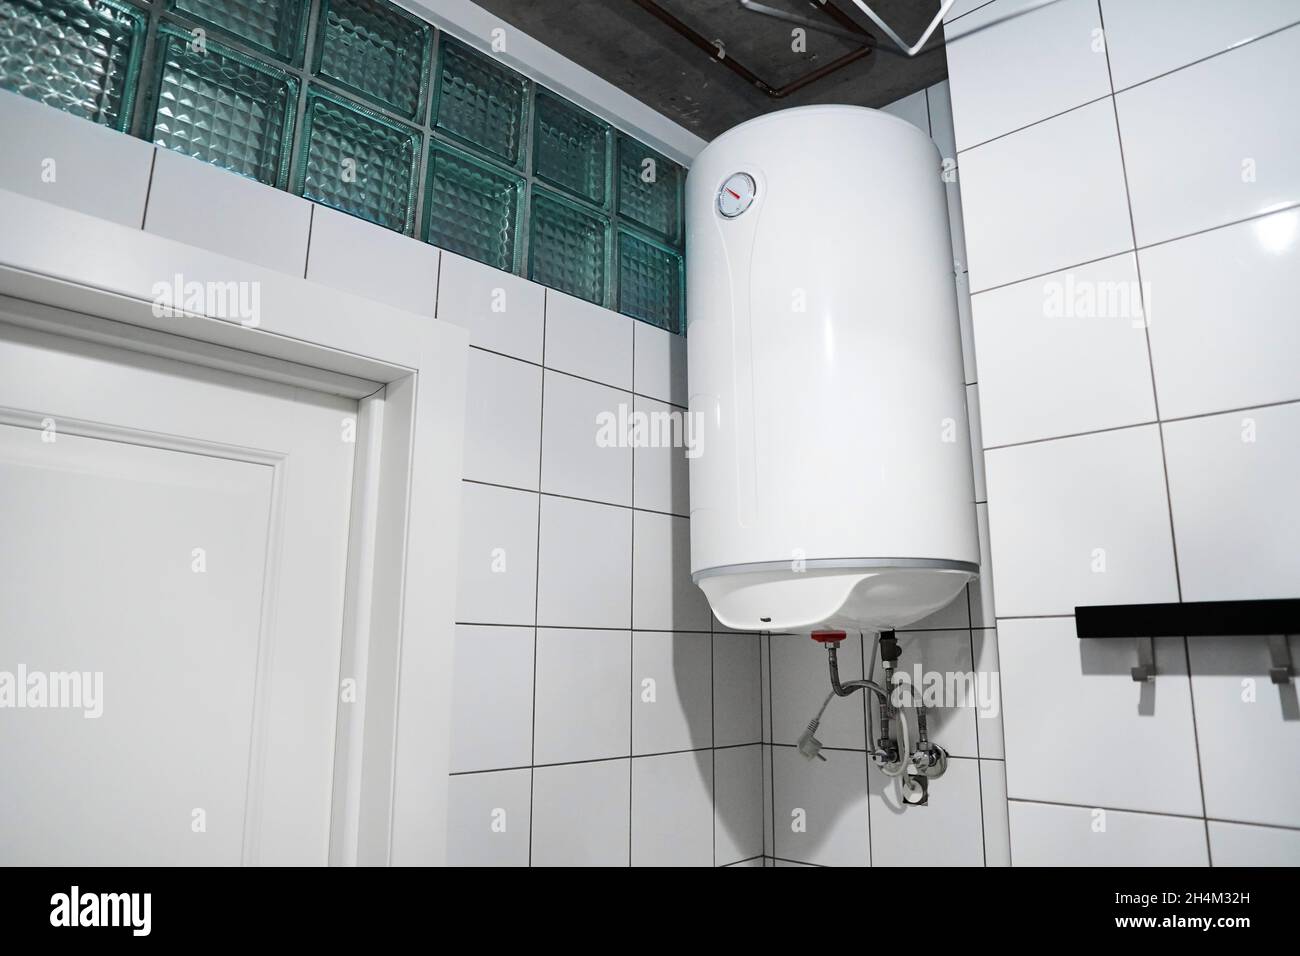 Chaudière à gaz moderne dans la salle de bains.Chauffe-eau budget domestique suspendu au mur dans la chaufferie.Chauffe-eau électrique commun du réservoir de stockage Banque D'Images